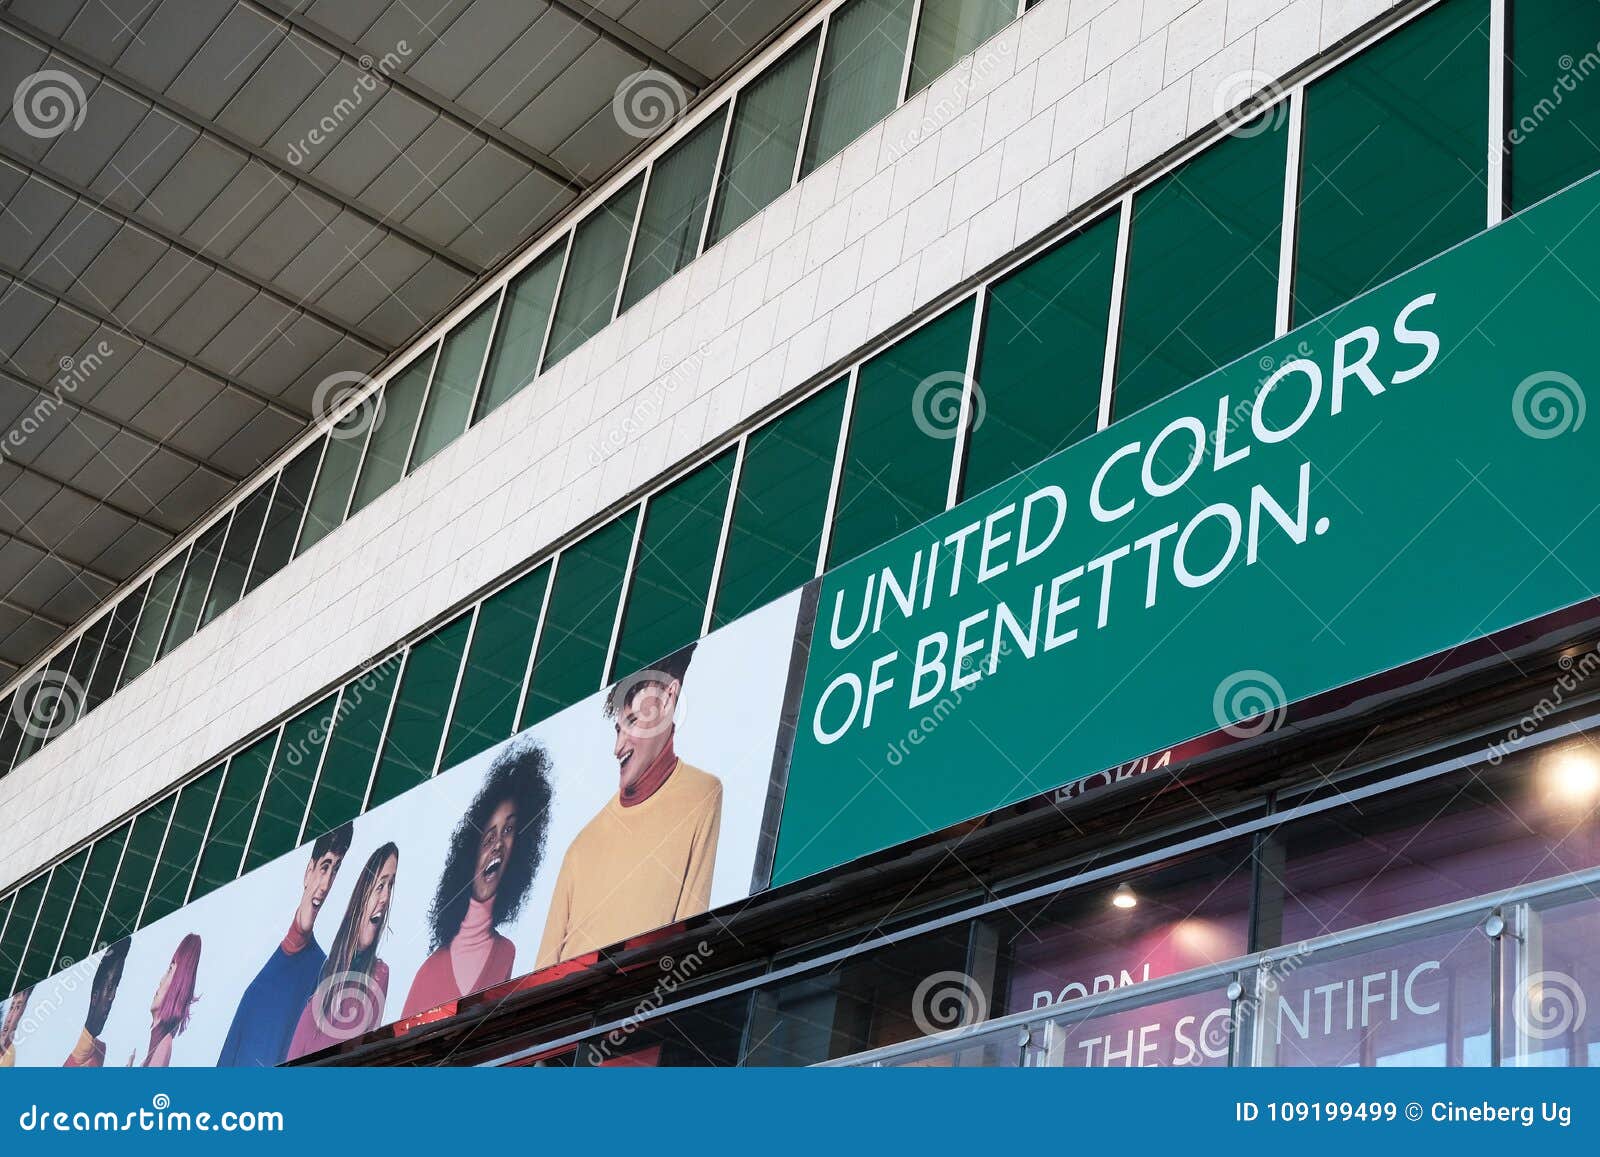 Verenigde Kleuren Van Benetton-winkel Redactionele Stock Afbeelding - Image of betoverend, 109199499